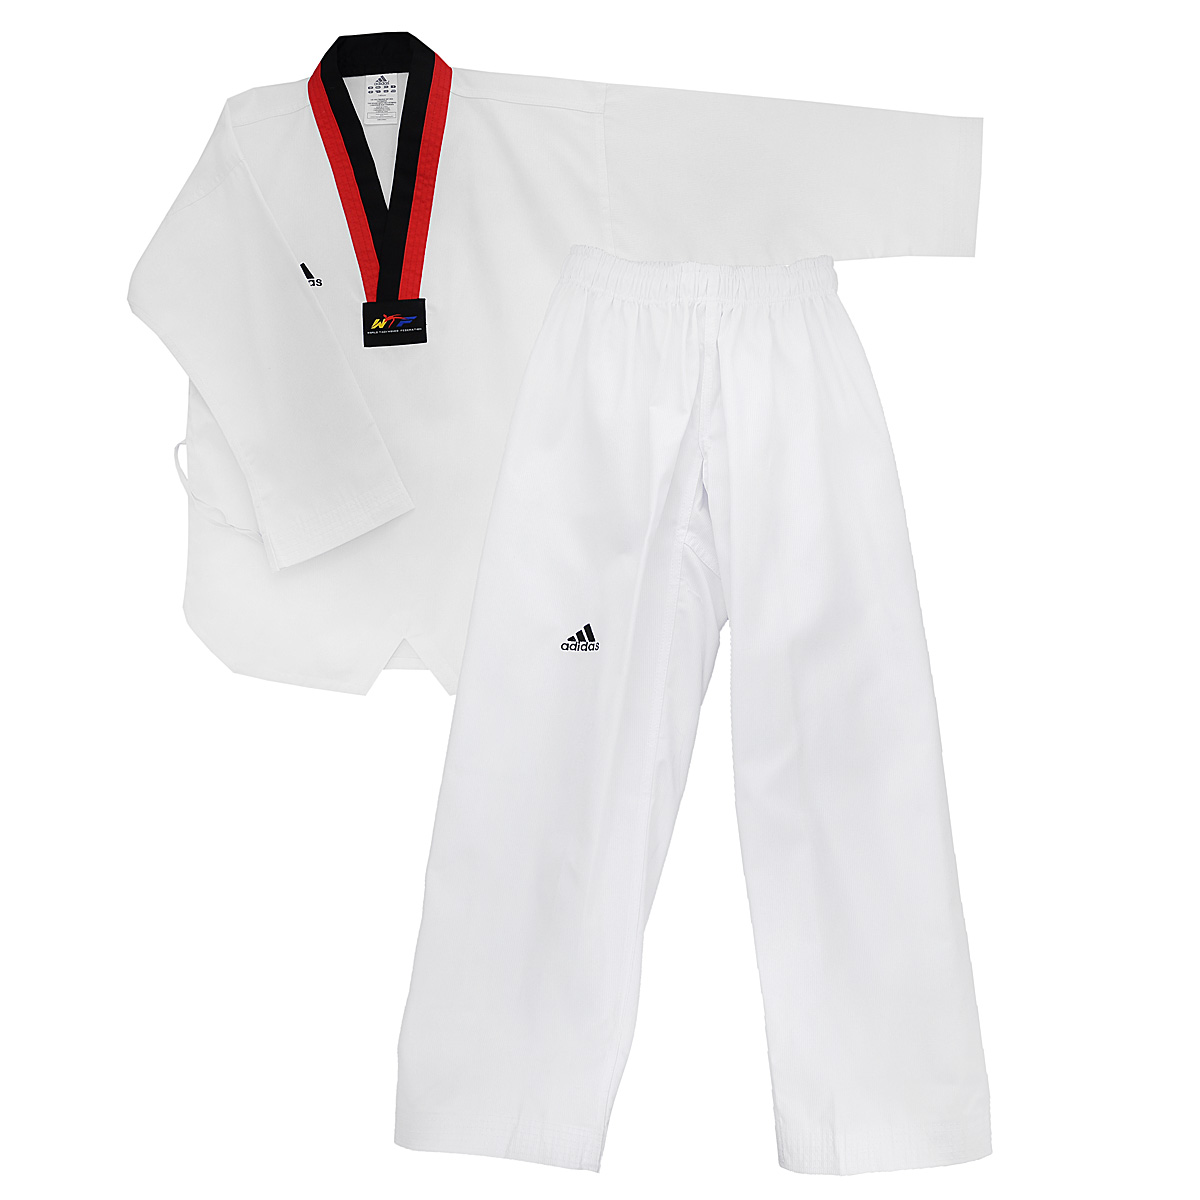 заказать и купить Кимоно для тхэквондо adidas Taekwondo Adi-Start, цвет: белый, черный, красный. adiTS01-WH/RD-BK. Размер 110